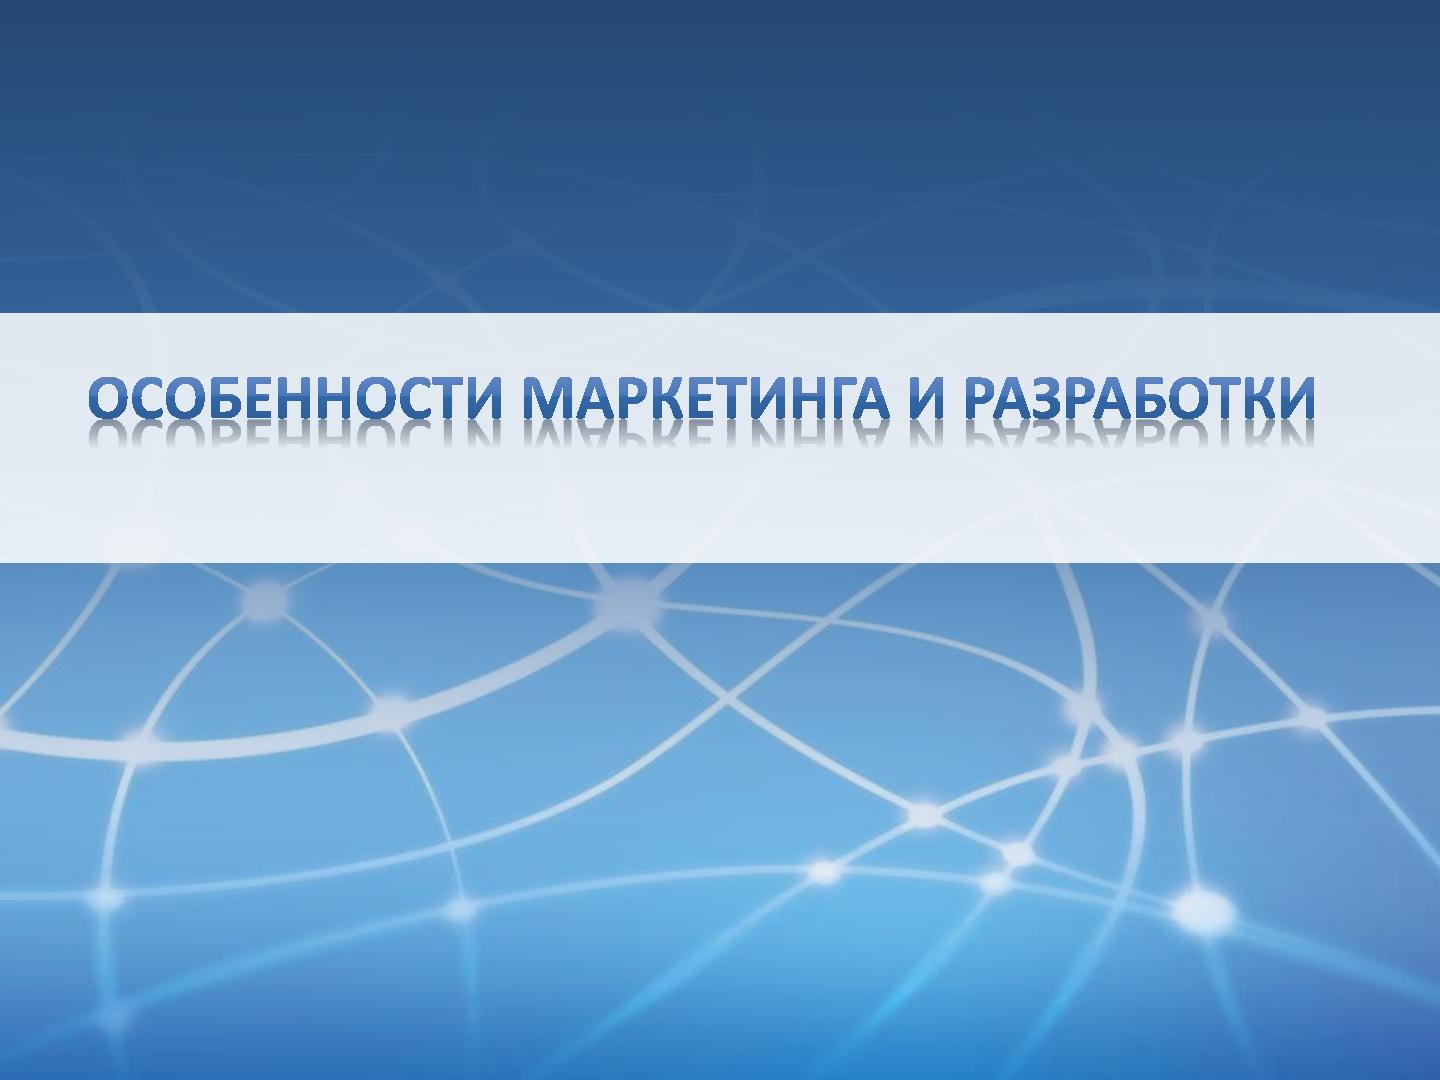 Файл:Лицензируемое ПО vs SaaS - подходы к разработке и маркетингу (Мария Бондаренко, ProductCampSPB-2012).pdf